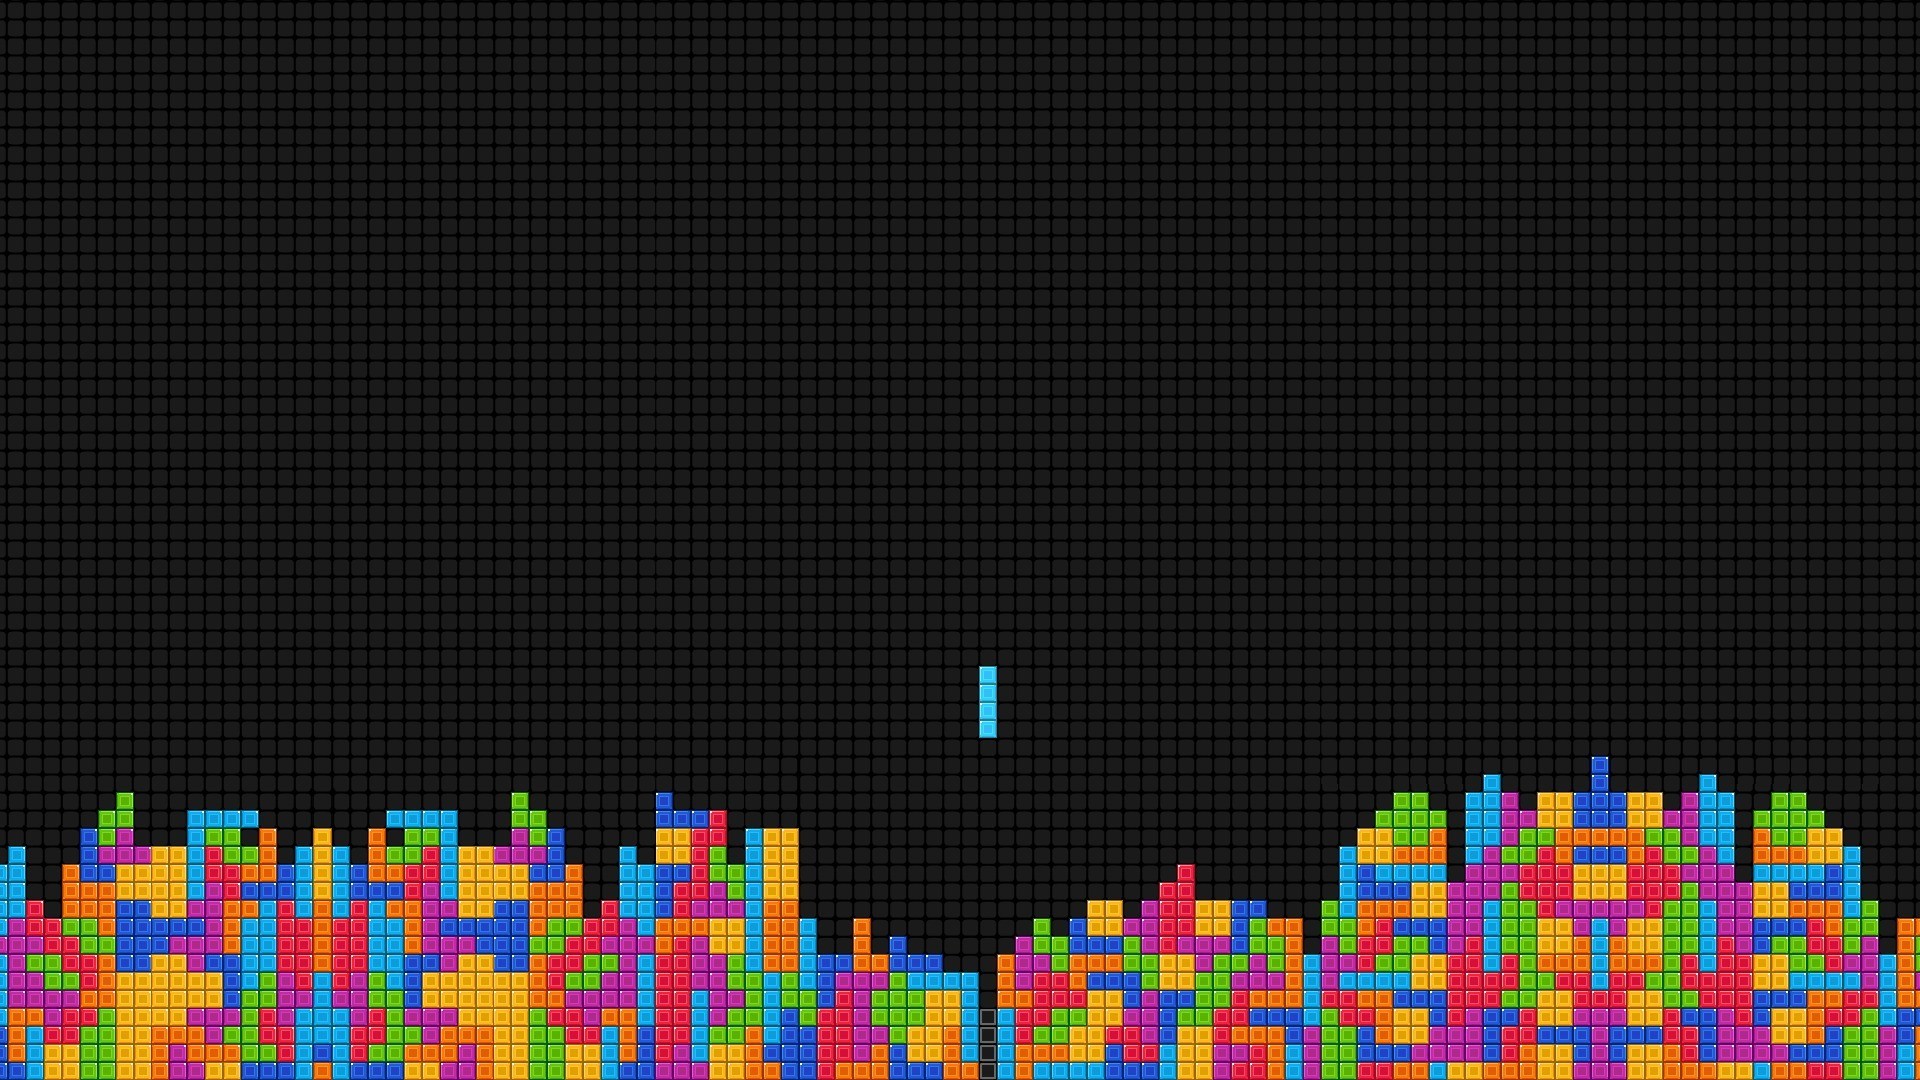 Tetris Computer Wallpapers Desktop Backgrounds HD Wallpapers Download Free Images Wallpaper [wallpaper981.blogspot.com]